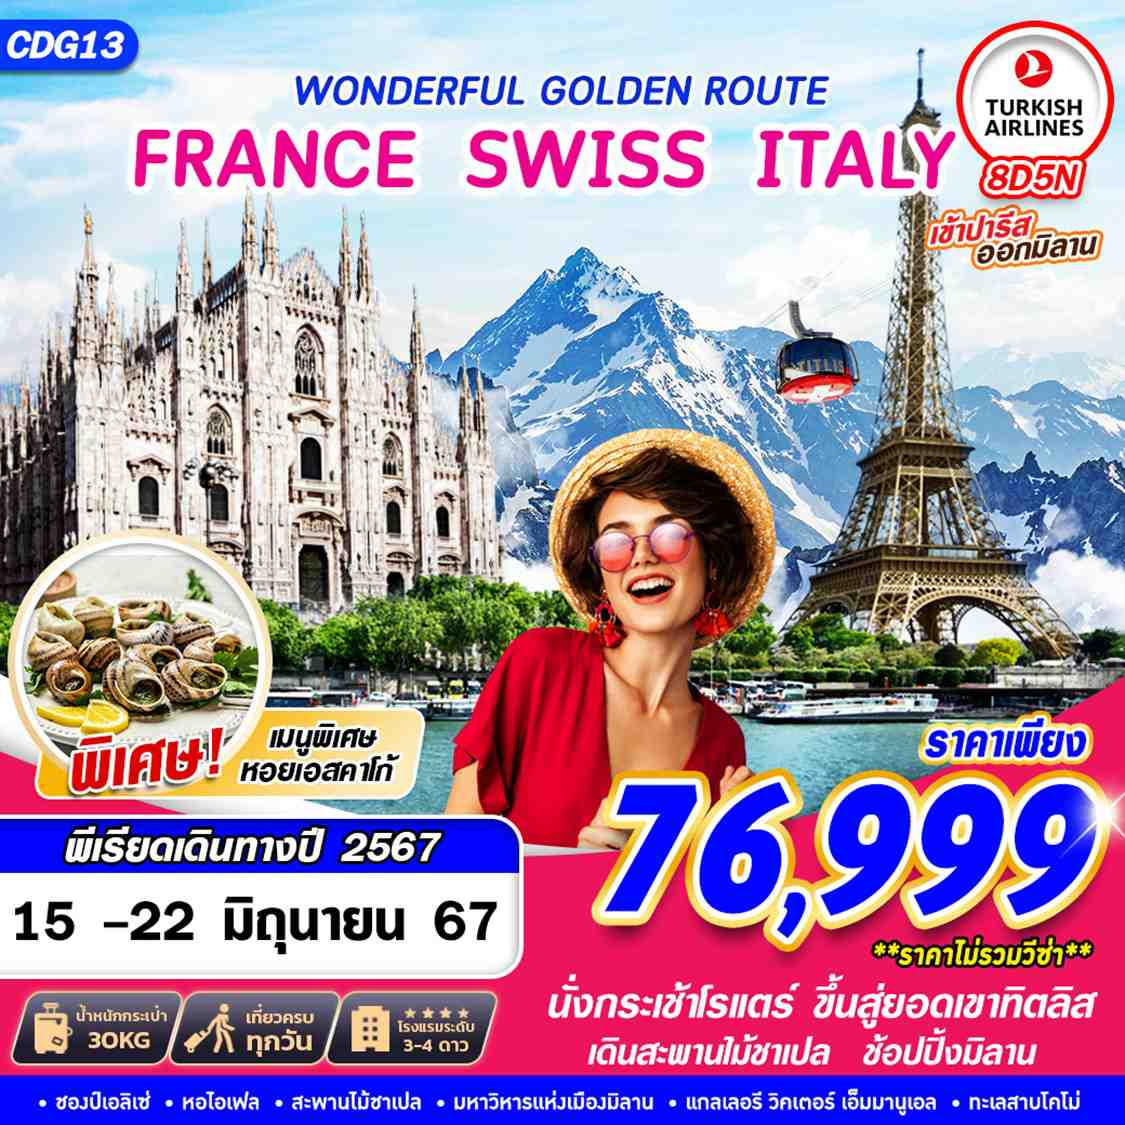 ทัวร์ฝรั่งเศส สวิตเซอร์แลนด์ อิตาลี WONDERFUL GOLDEN ROUTE 8วัน 5คืน (TK)